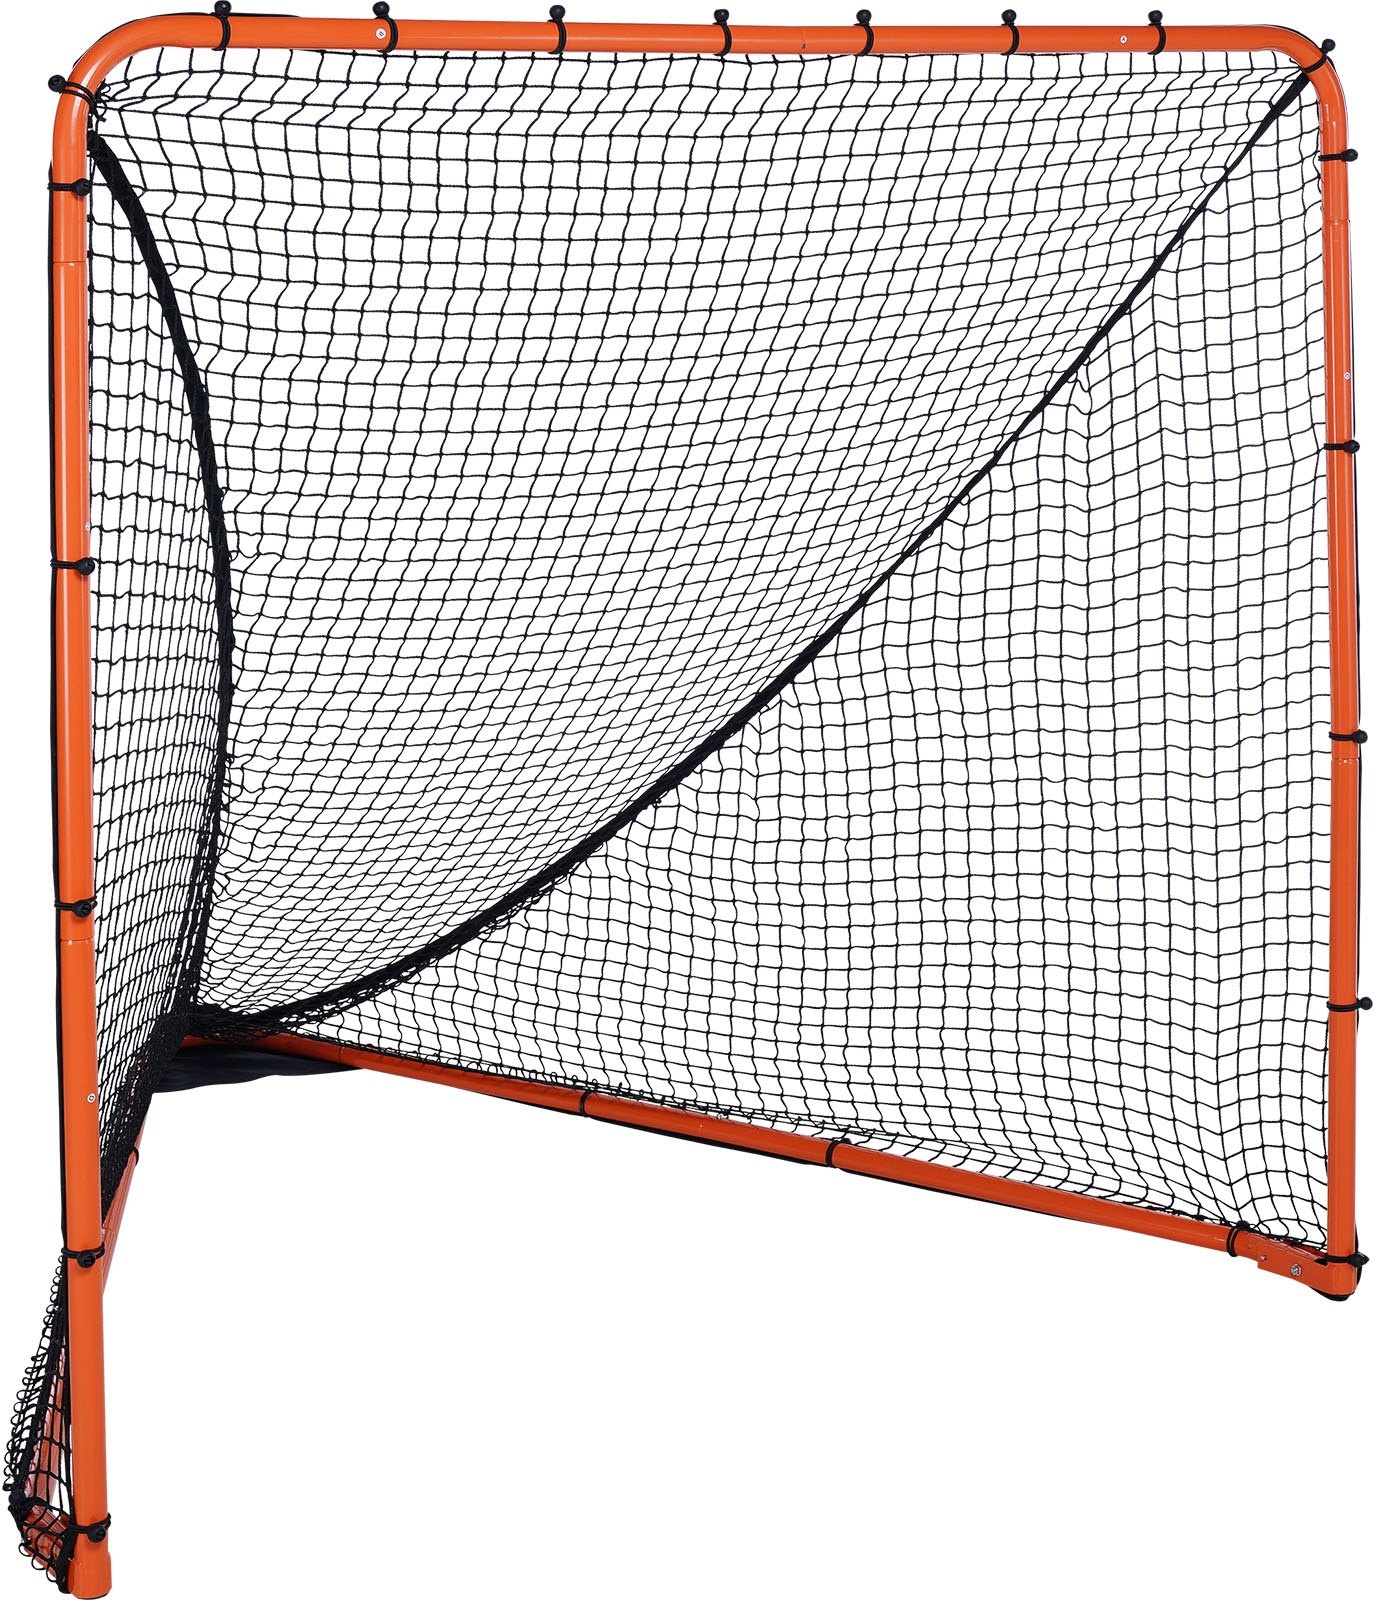 VEVOR Lacrosse-Tor, 6' x 6' Lacrosse-Netz, faltbare tragbare Hinterhof-Lacrosse-Trainingsausrüstung, Stahlrahmen-Trainingsnetz, schnell und einfach aufzubauendes Lacrosse-Tor, perfekt für das Training